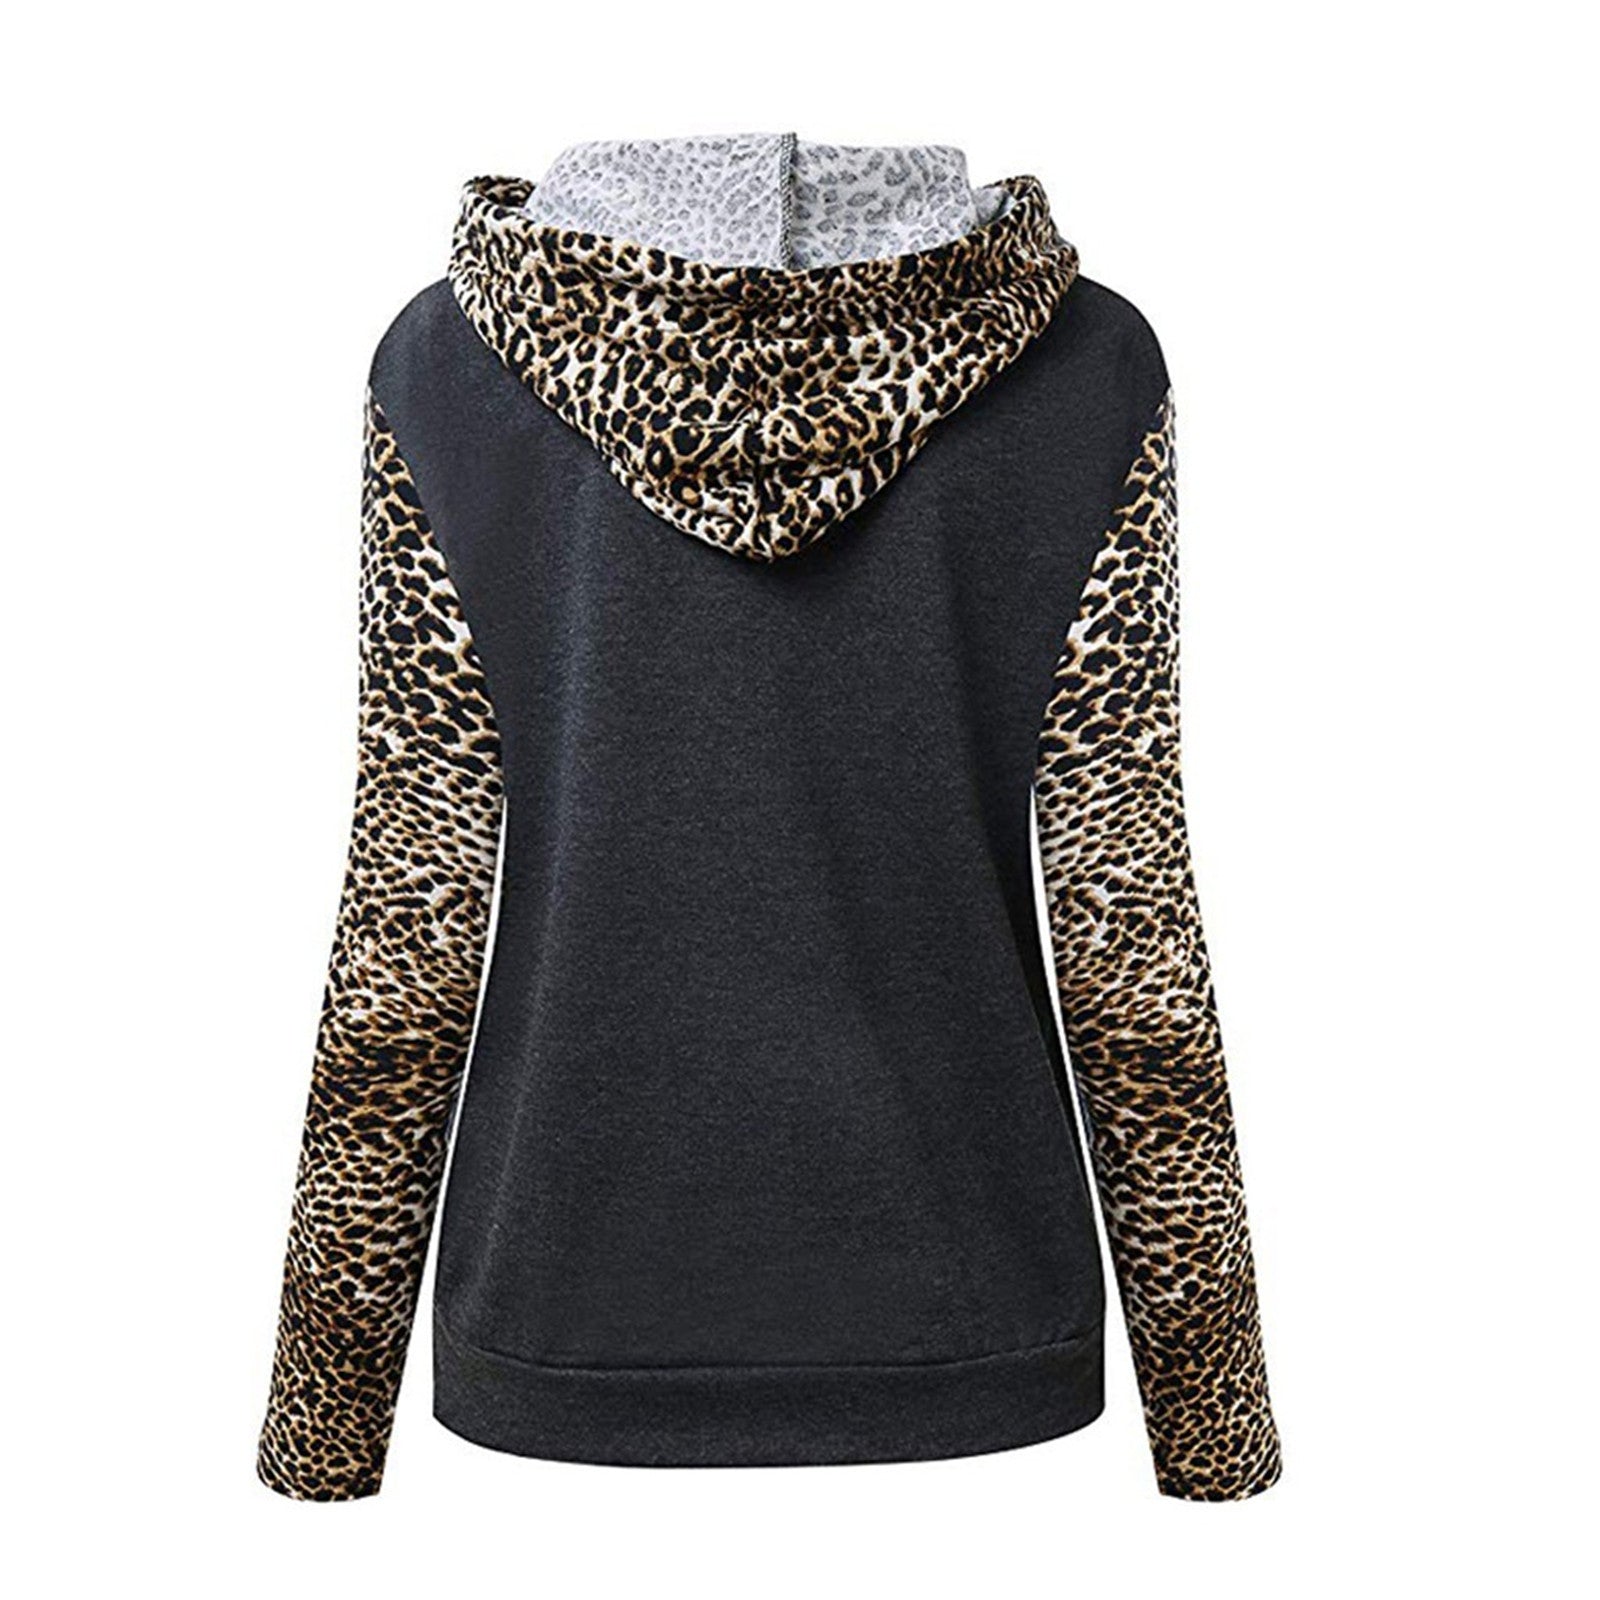 Leopard hooded printed sweatshirt